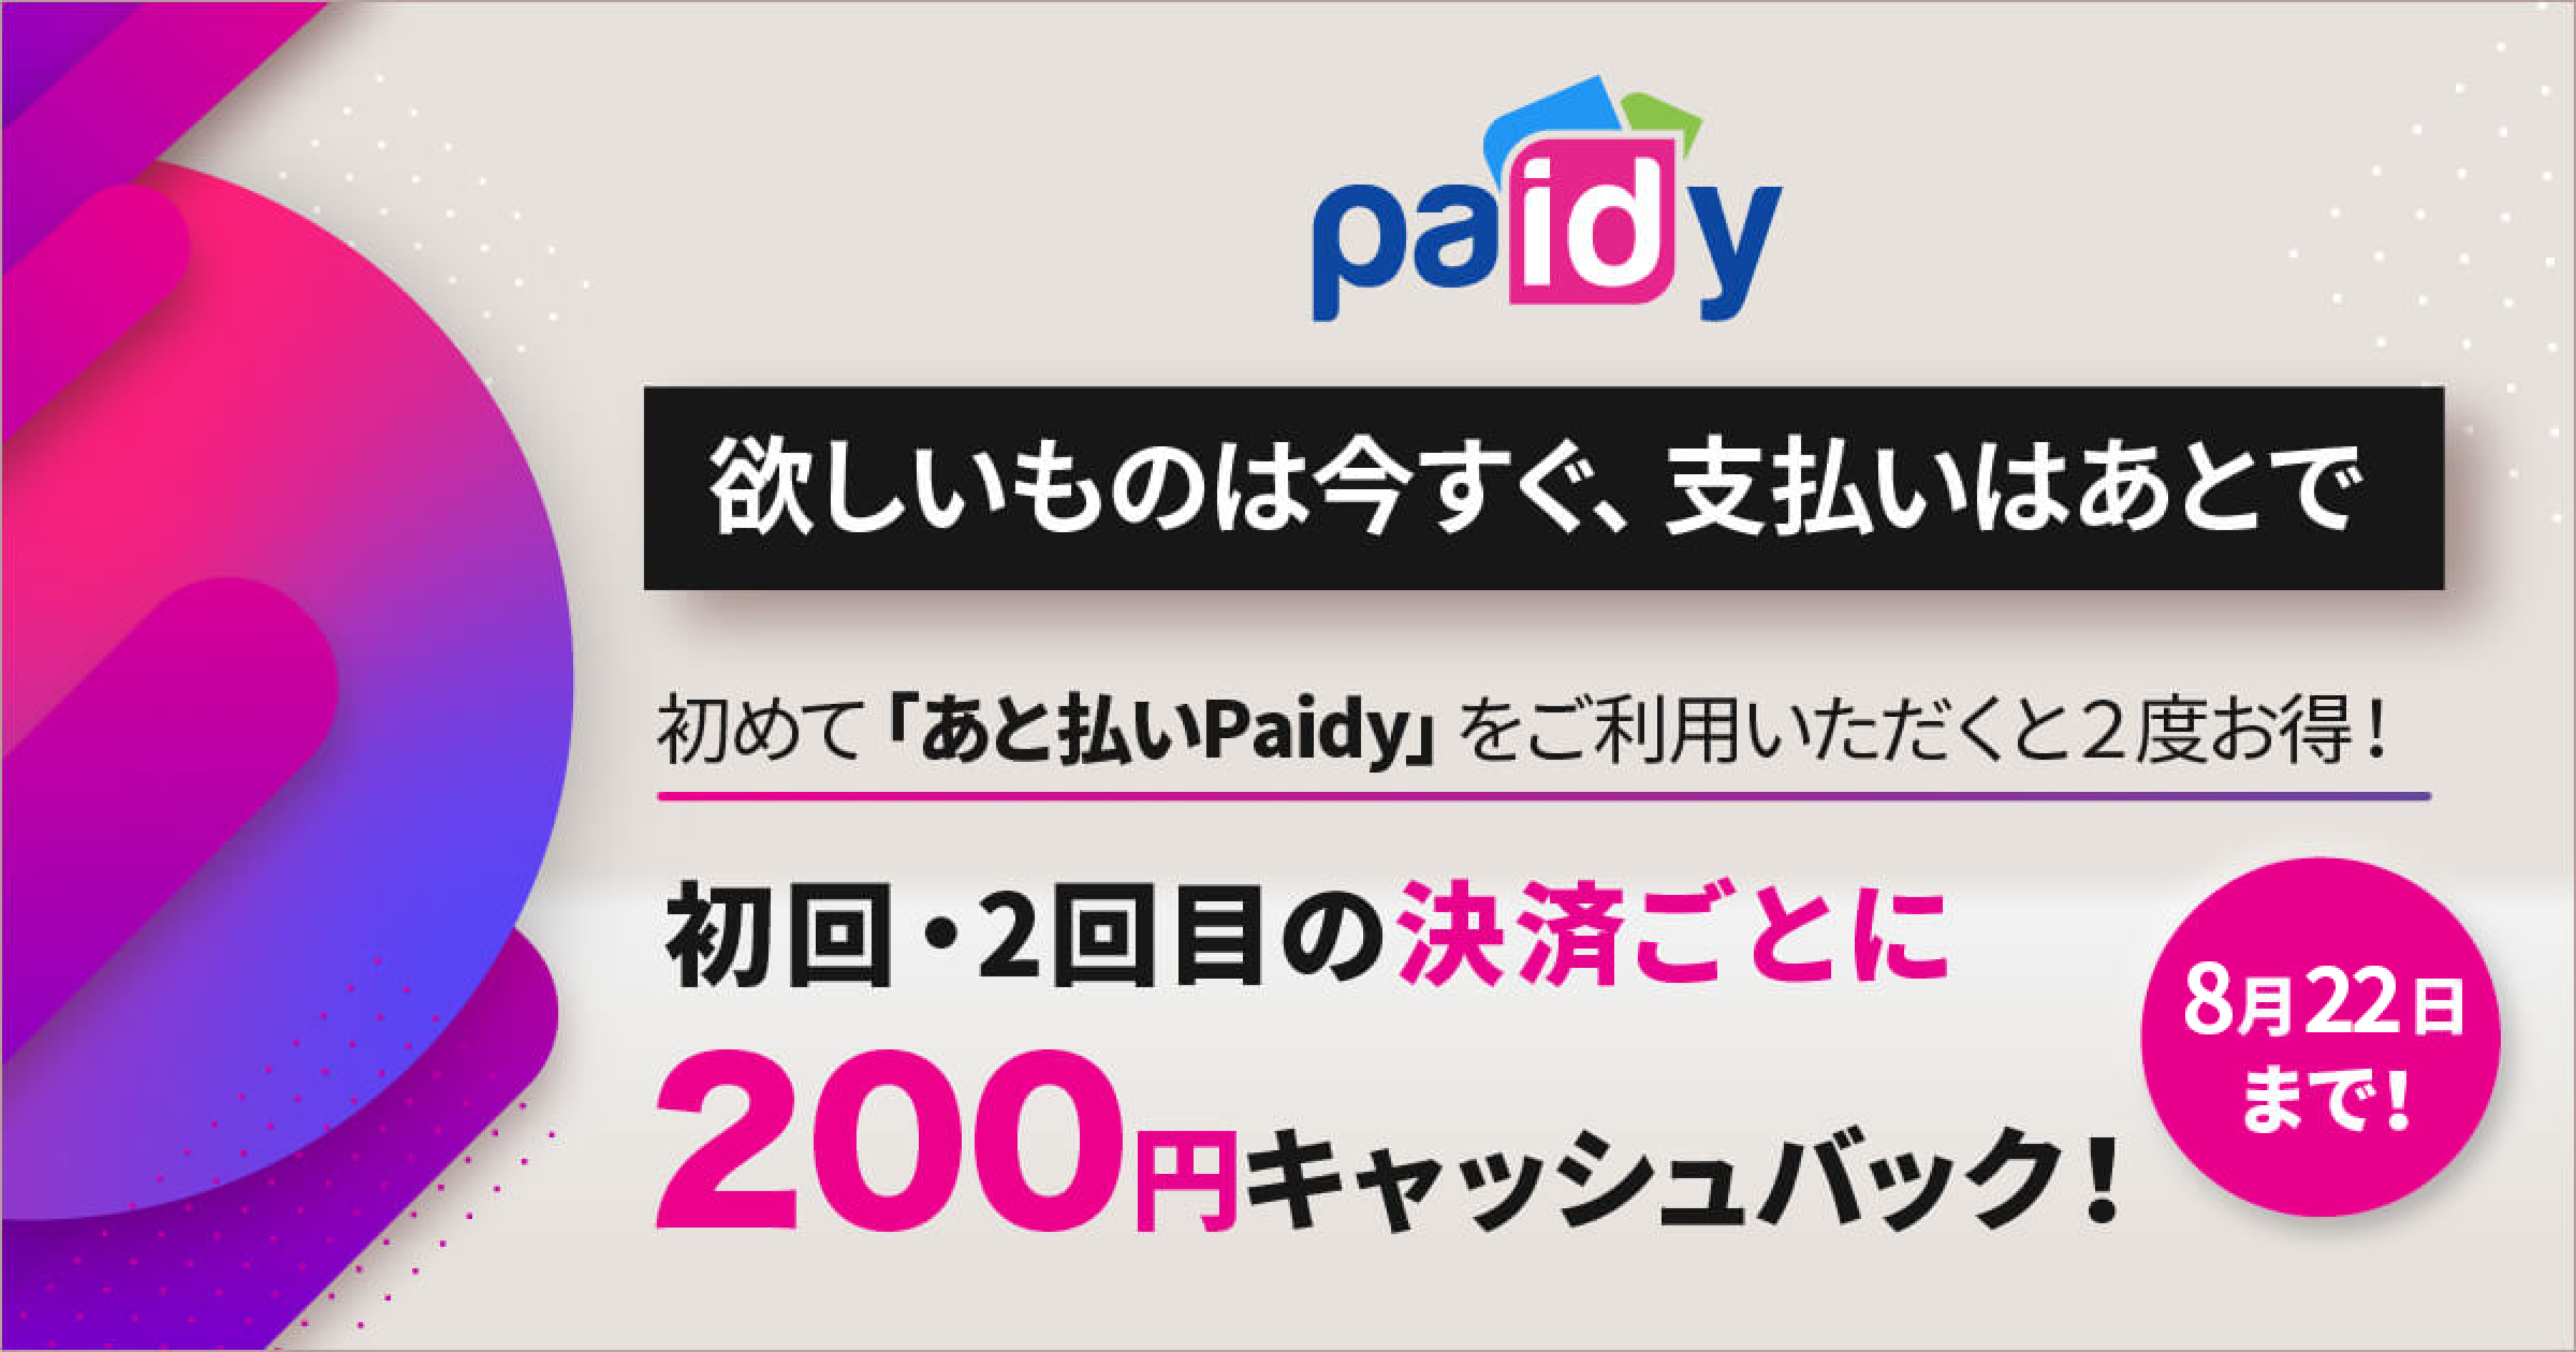 欲しいものは今すぐ、支払いはあとで 初めて「あと払いPaidy」をご利用いただくと2度お得！ 初回・2回目の決済ごとに200円キャッシュバック 8月22日まで